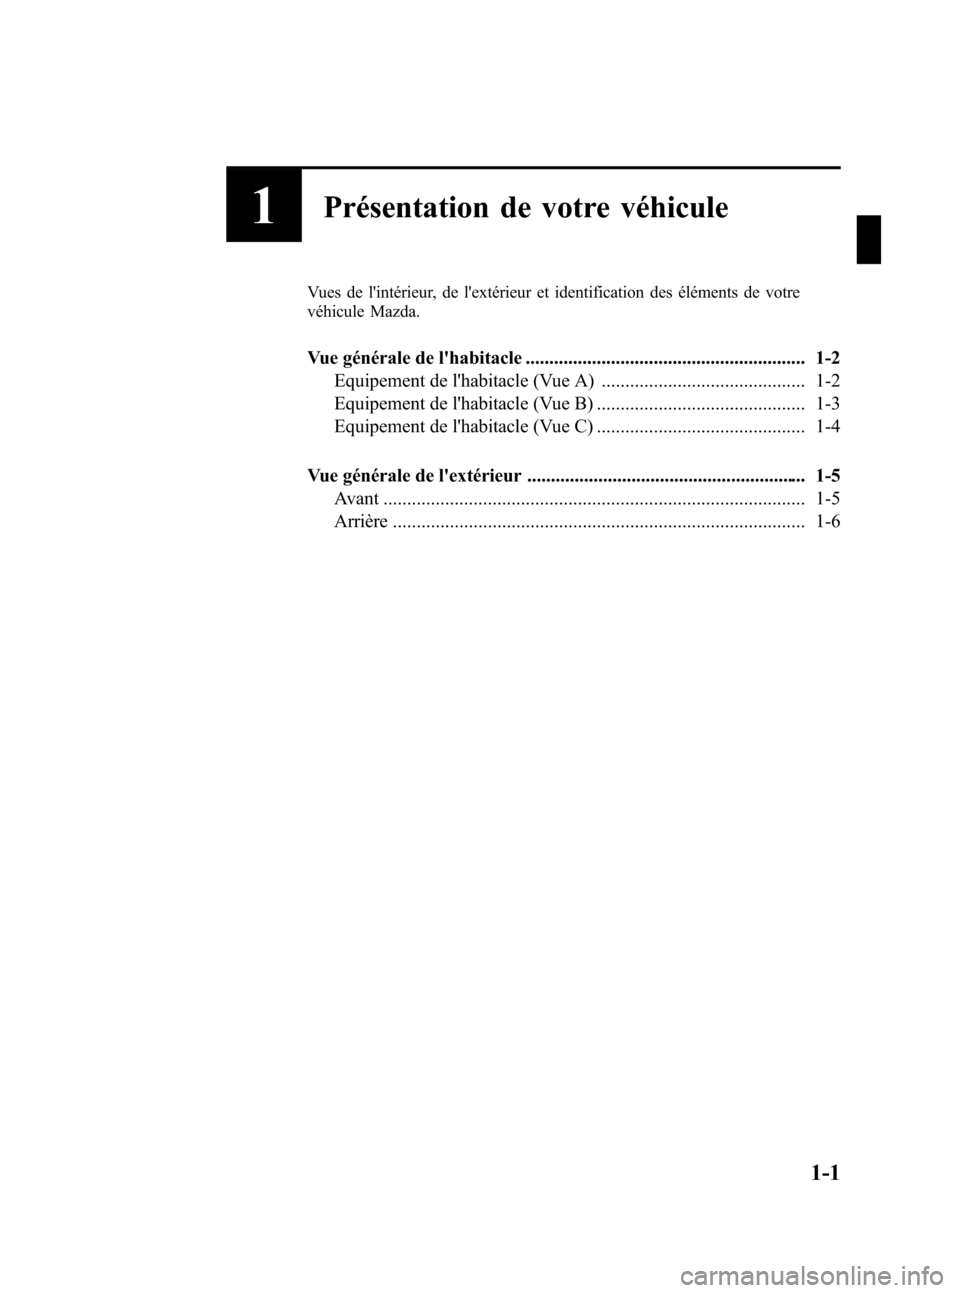 MAZDA MODEL CX-7 2011  Manuel du propriétaire (in French) Black plate (7,1)
1Présentation de votre véhicule
Vues de lintérieur, de lextérieur et identification des éléments de votre
véhicule Mazda.
Vue générale de lhabitacle .....................